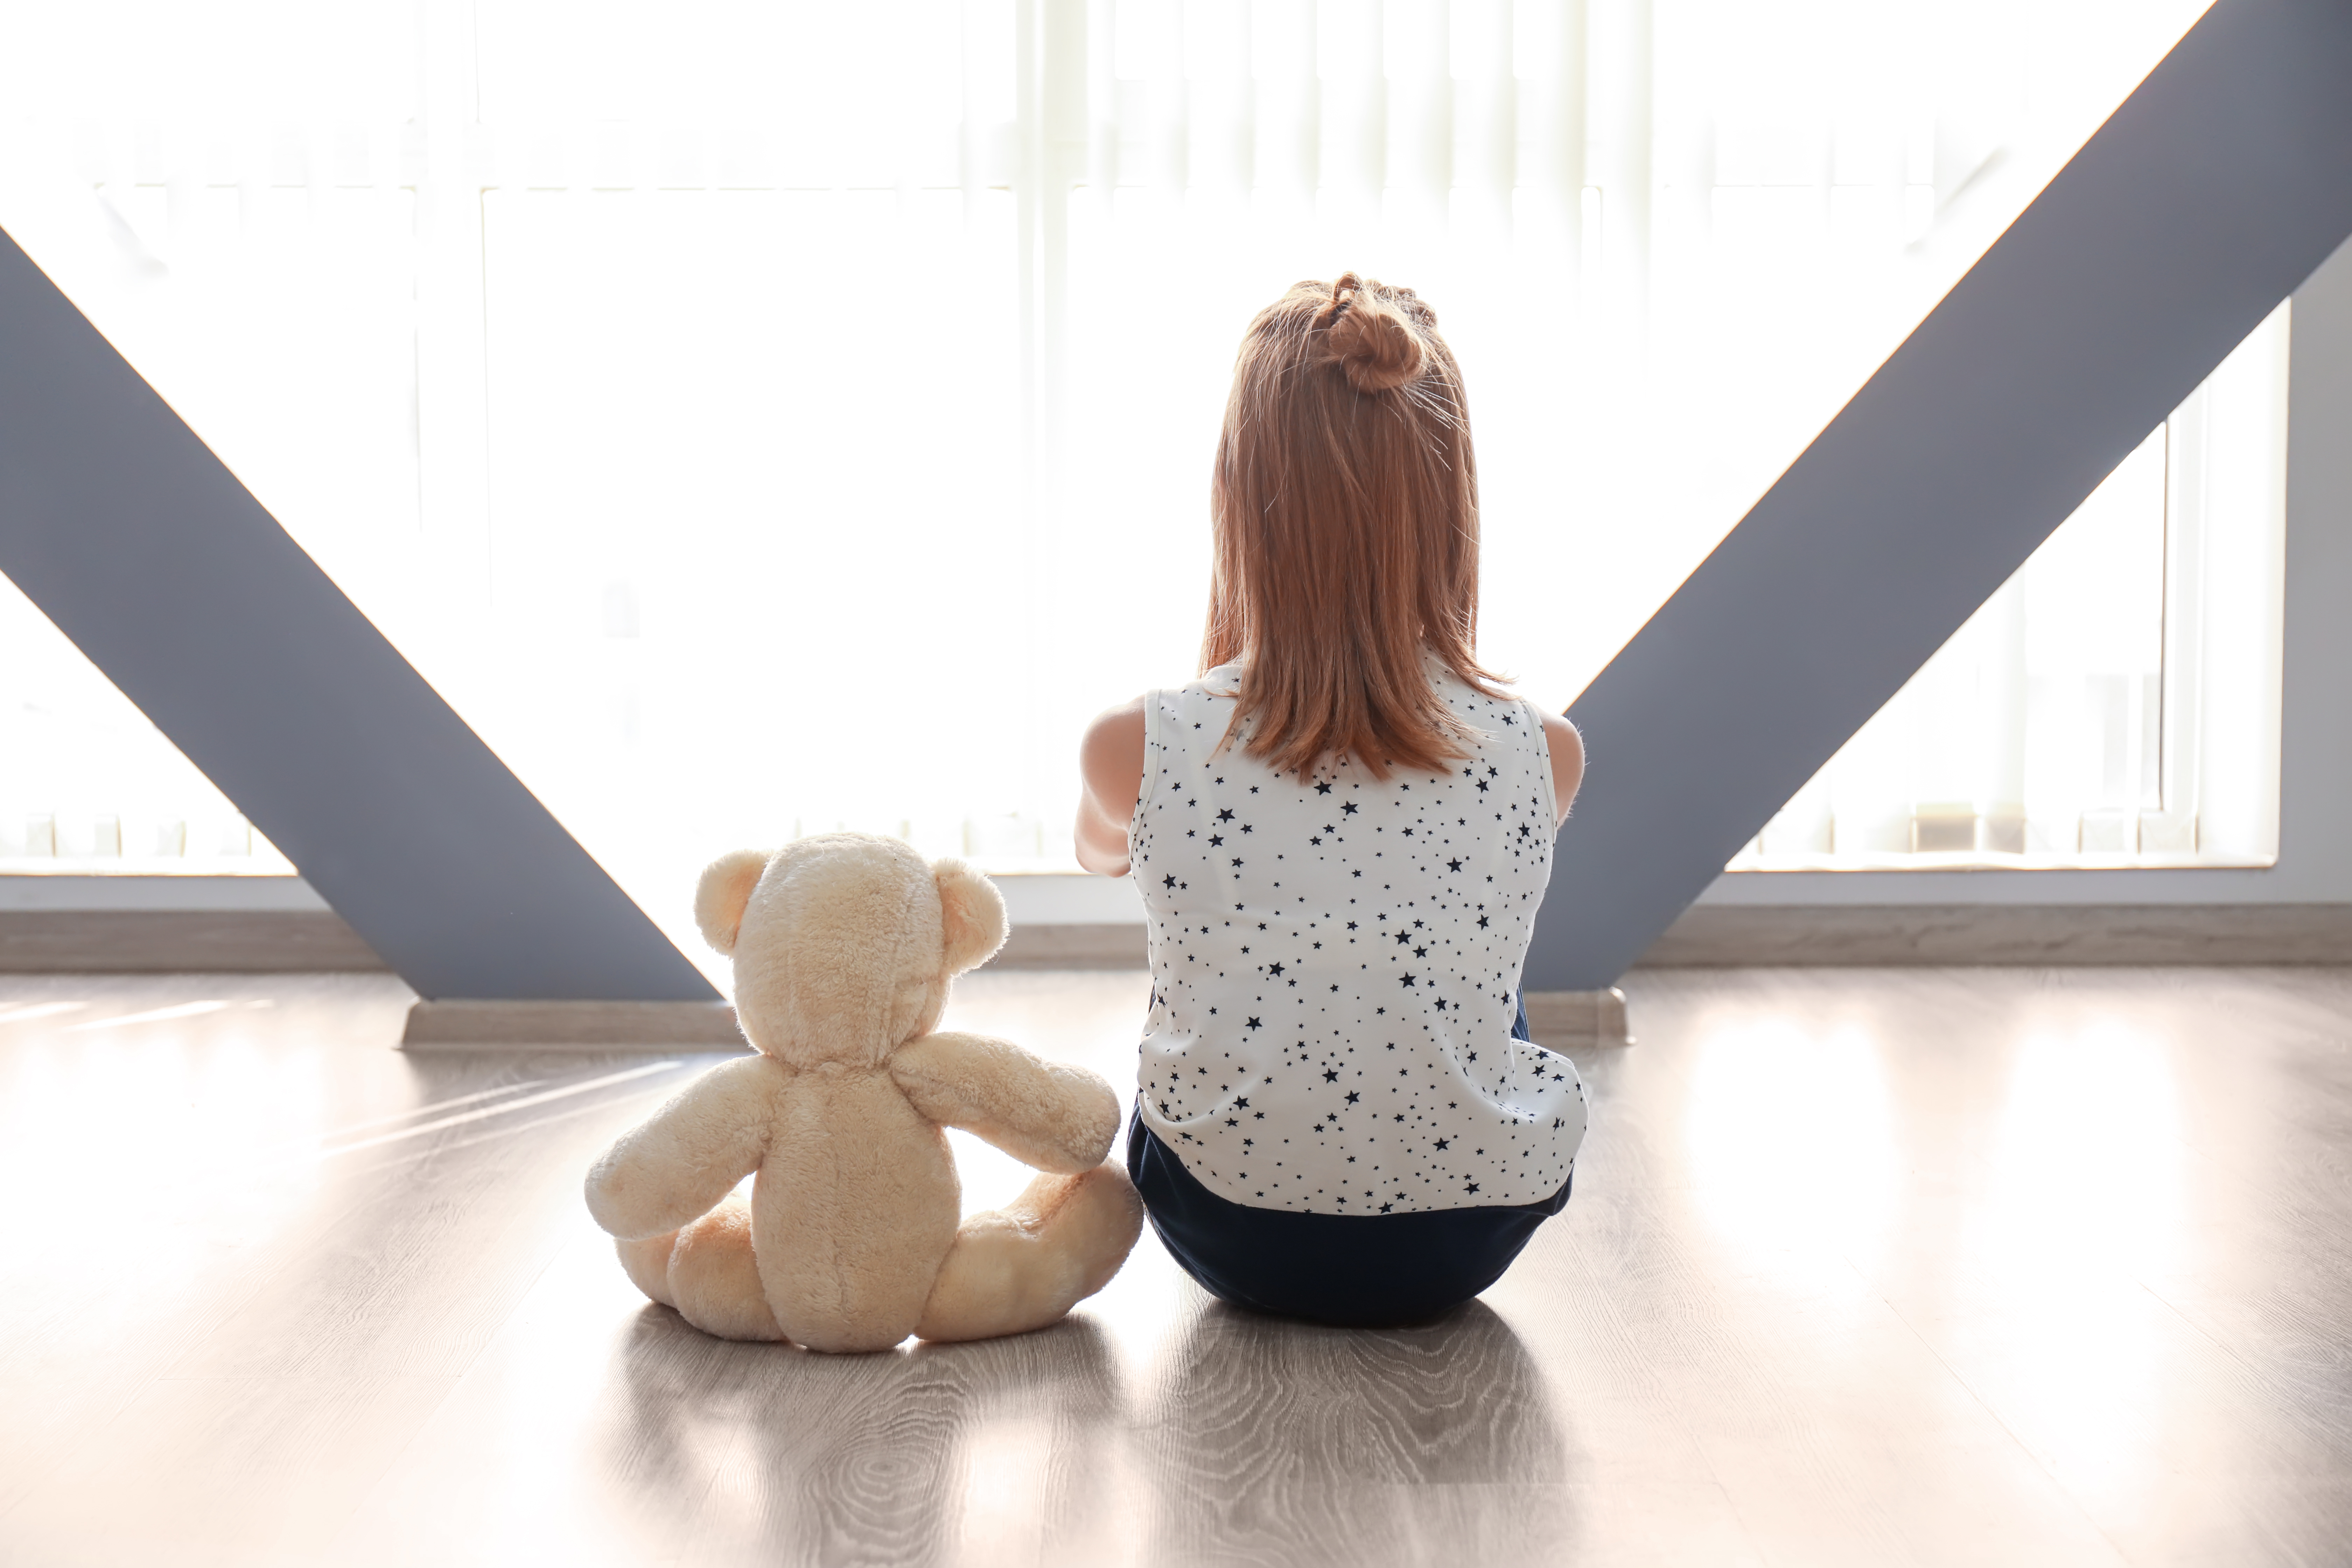 Une jeune fille assise seule sur le sol avec son ours en peluche | Source : Shutterstock